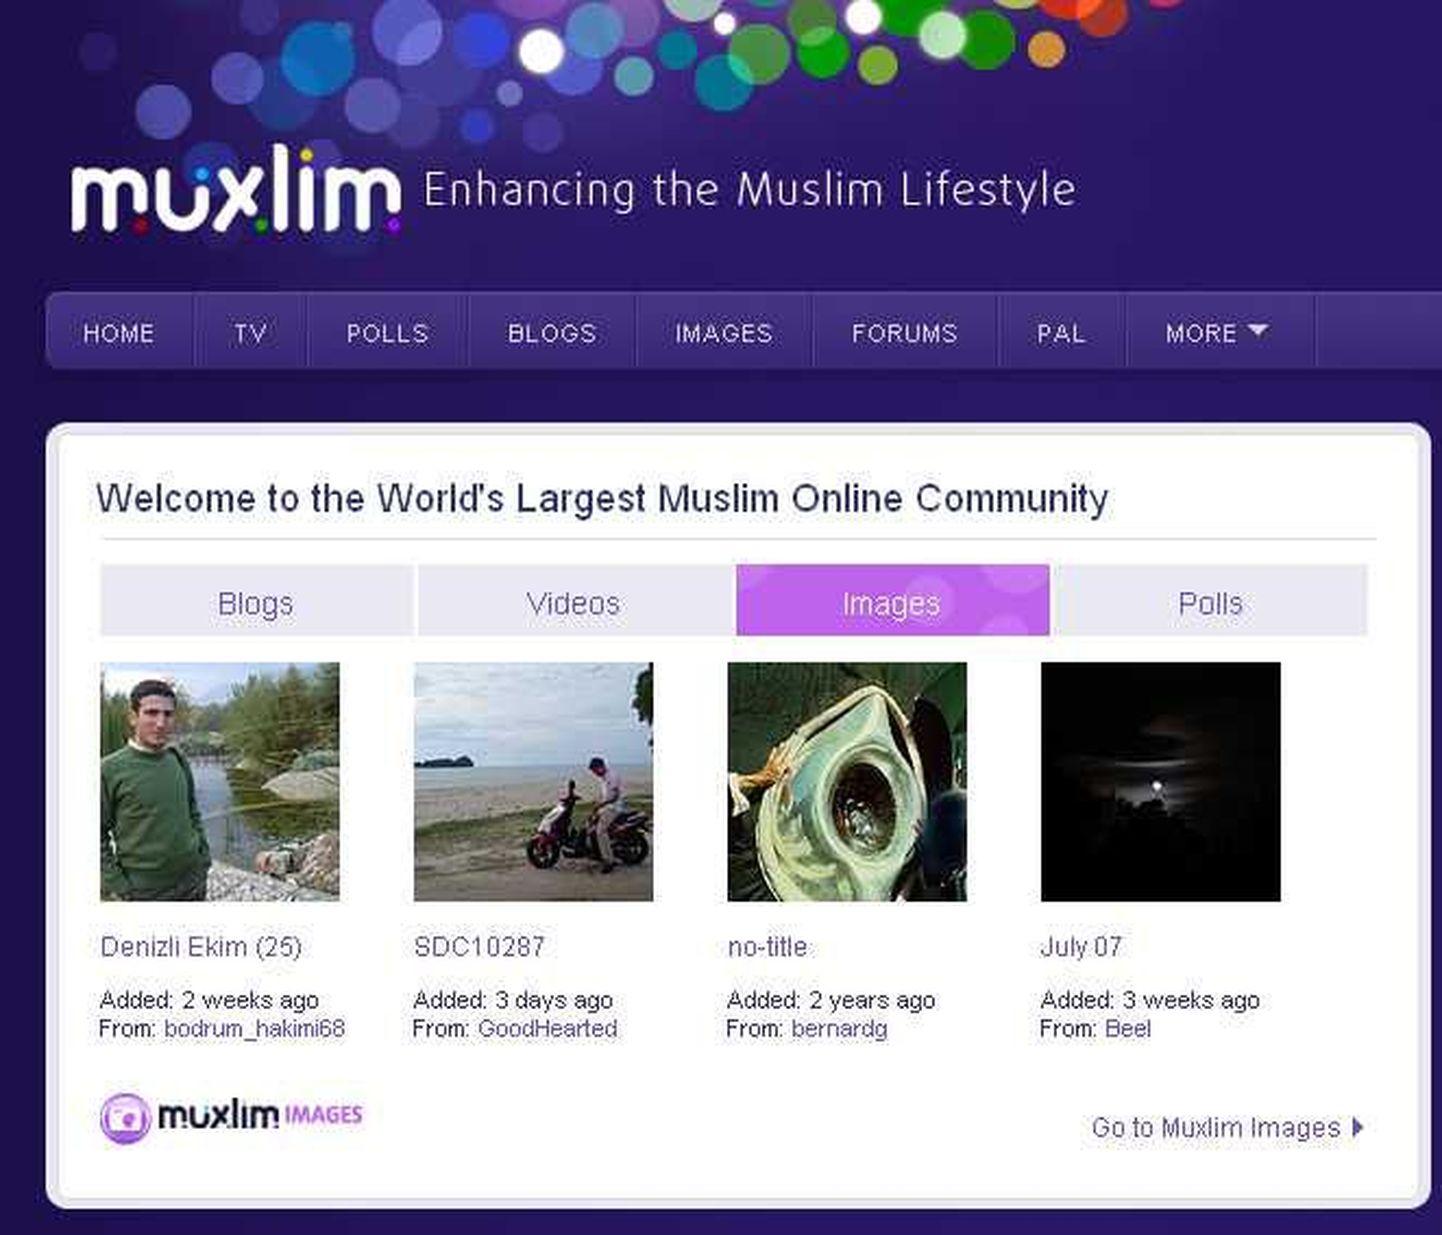 Soome firma Muxlim.com ehitas moslemitele virtuaalmaailma. Pildil fragment Muxlim.com`i veebilehelt.